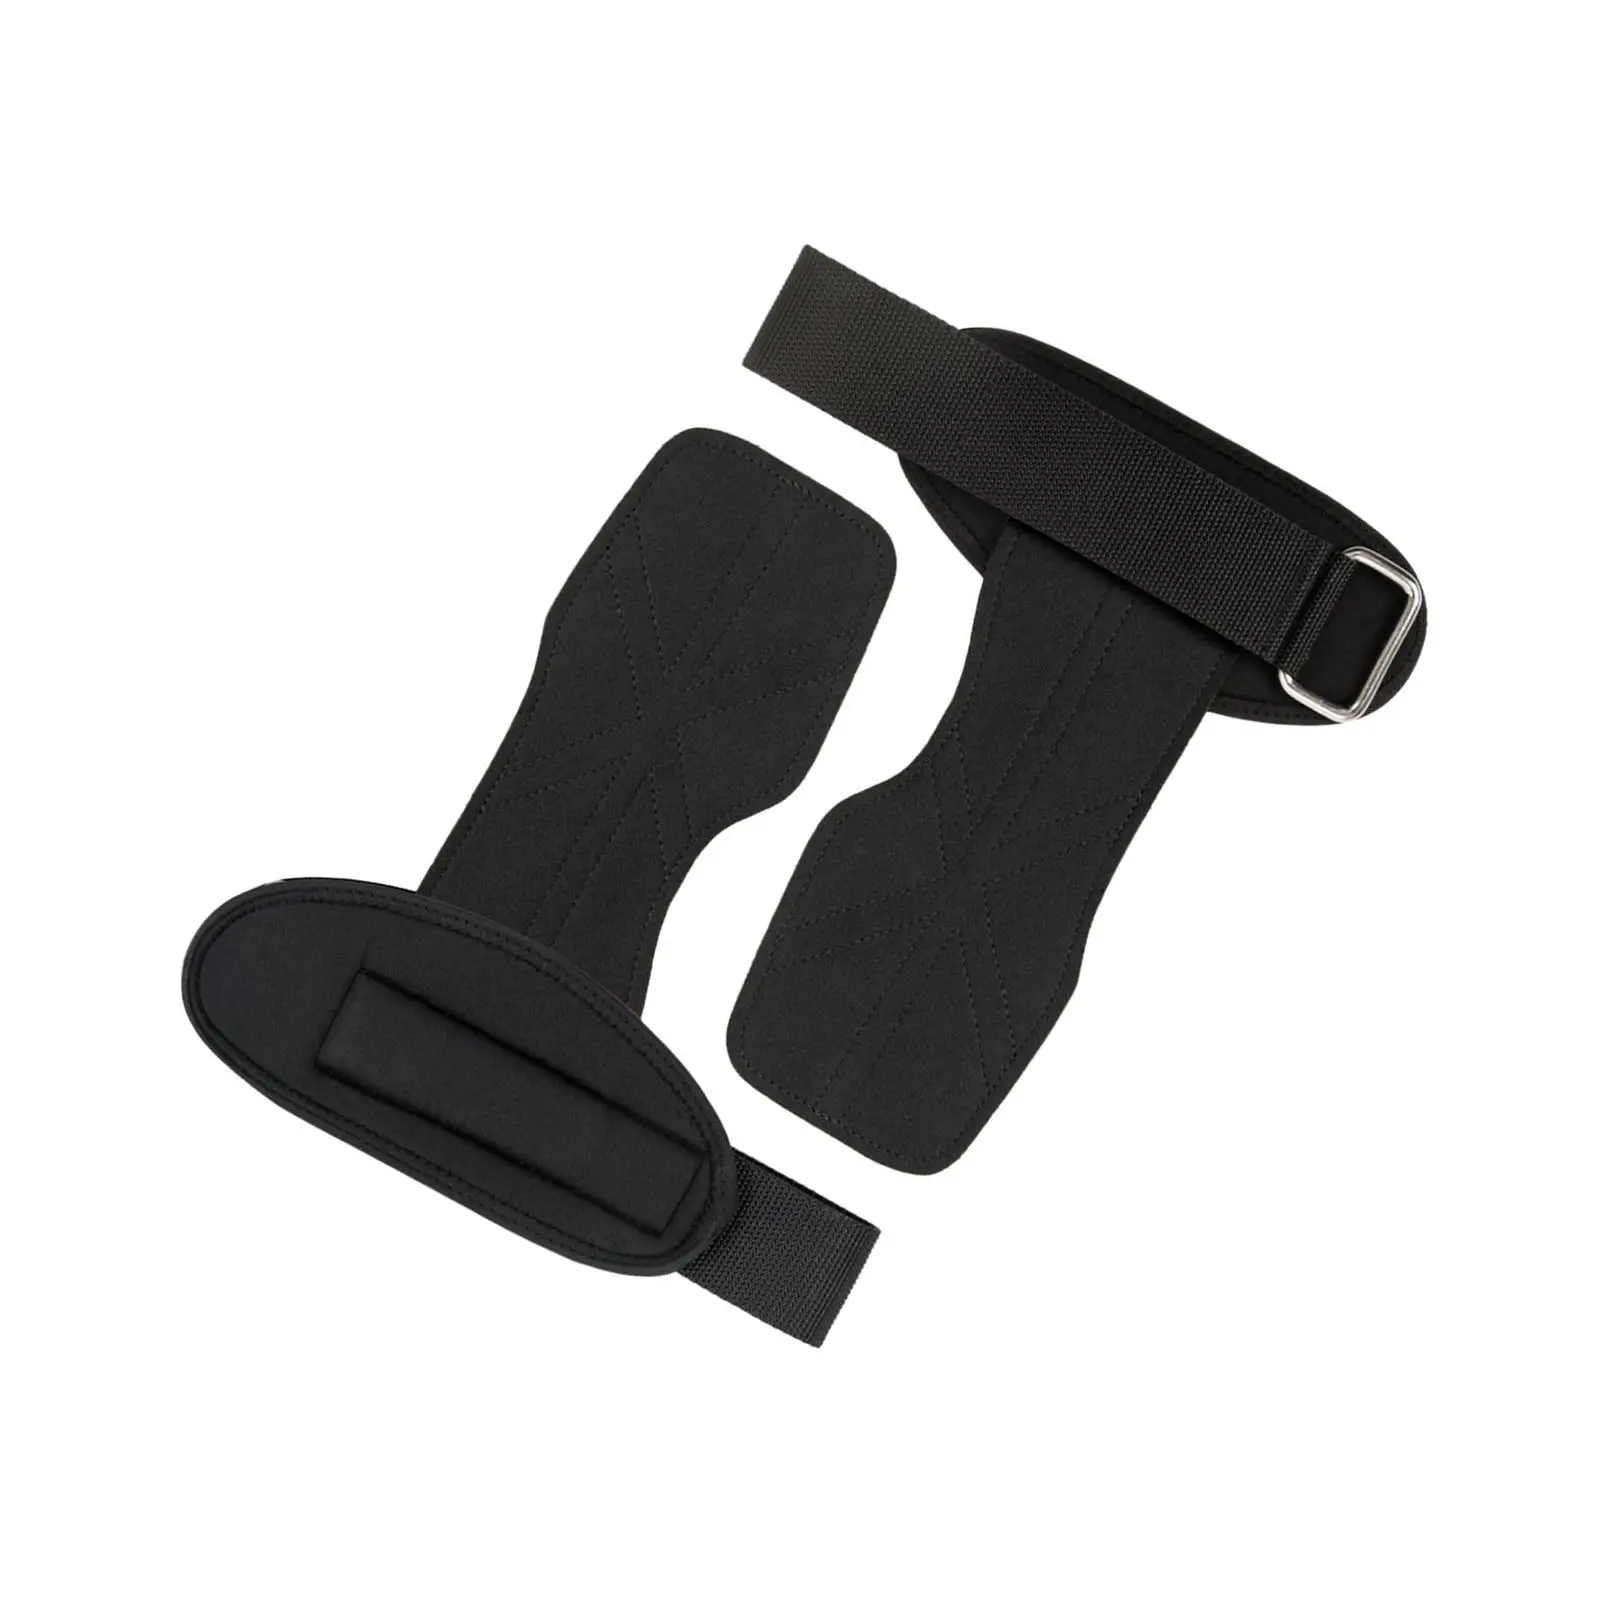 Lifting Wrist Straps Adjustable Breathable Non Slip Weight Lifting Hooks for Kettlebells Fitness Deadlift Dumbbell Bodybuilding